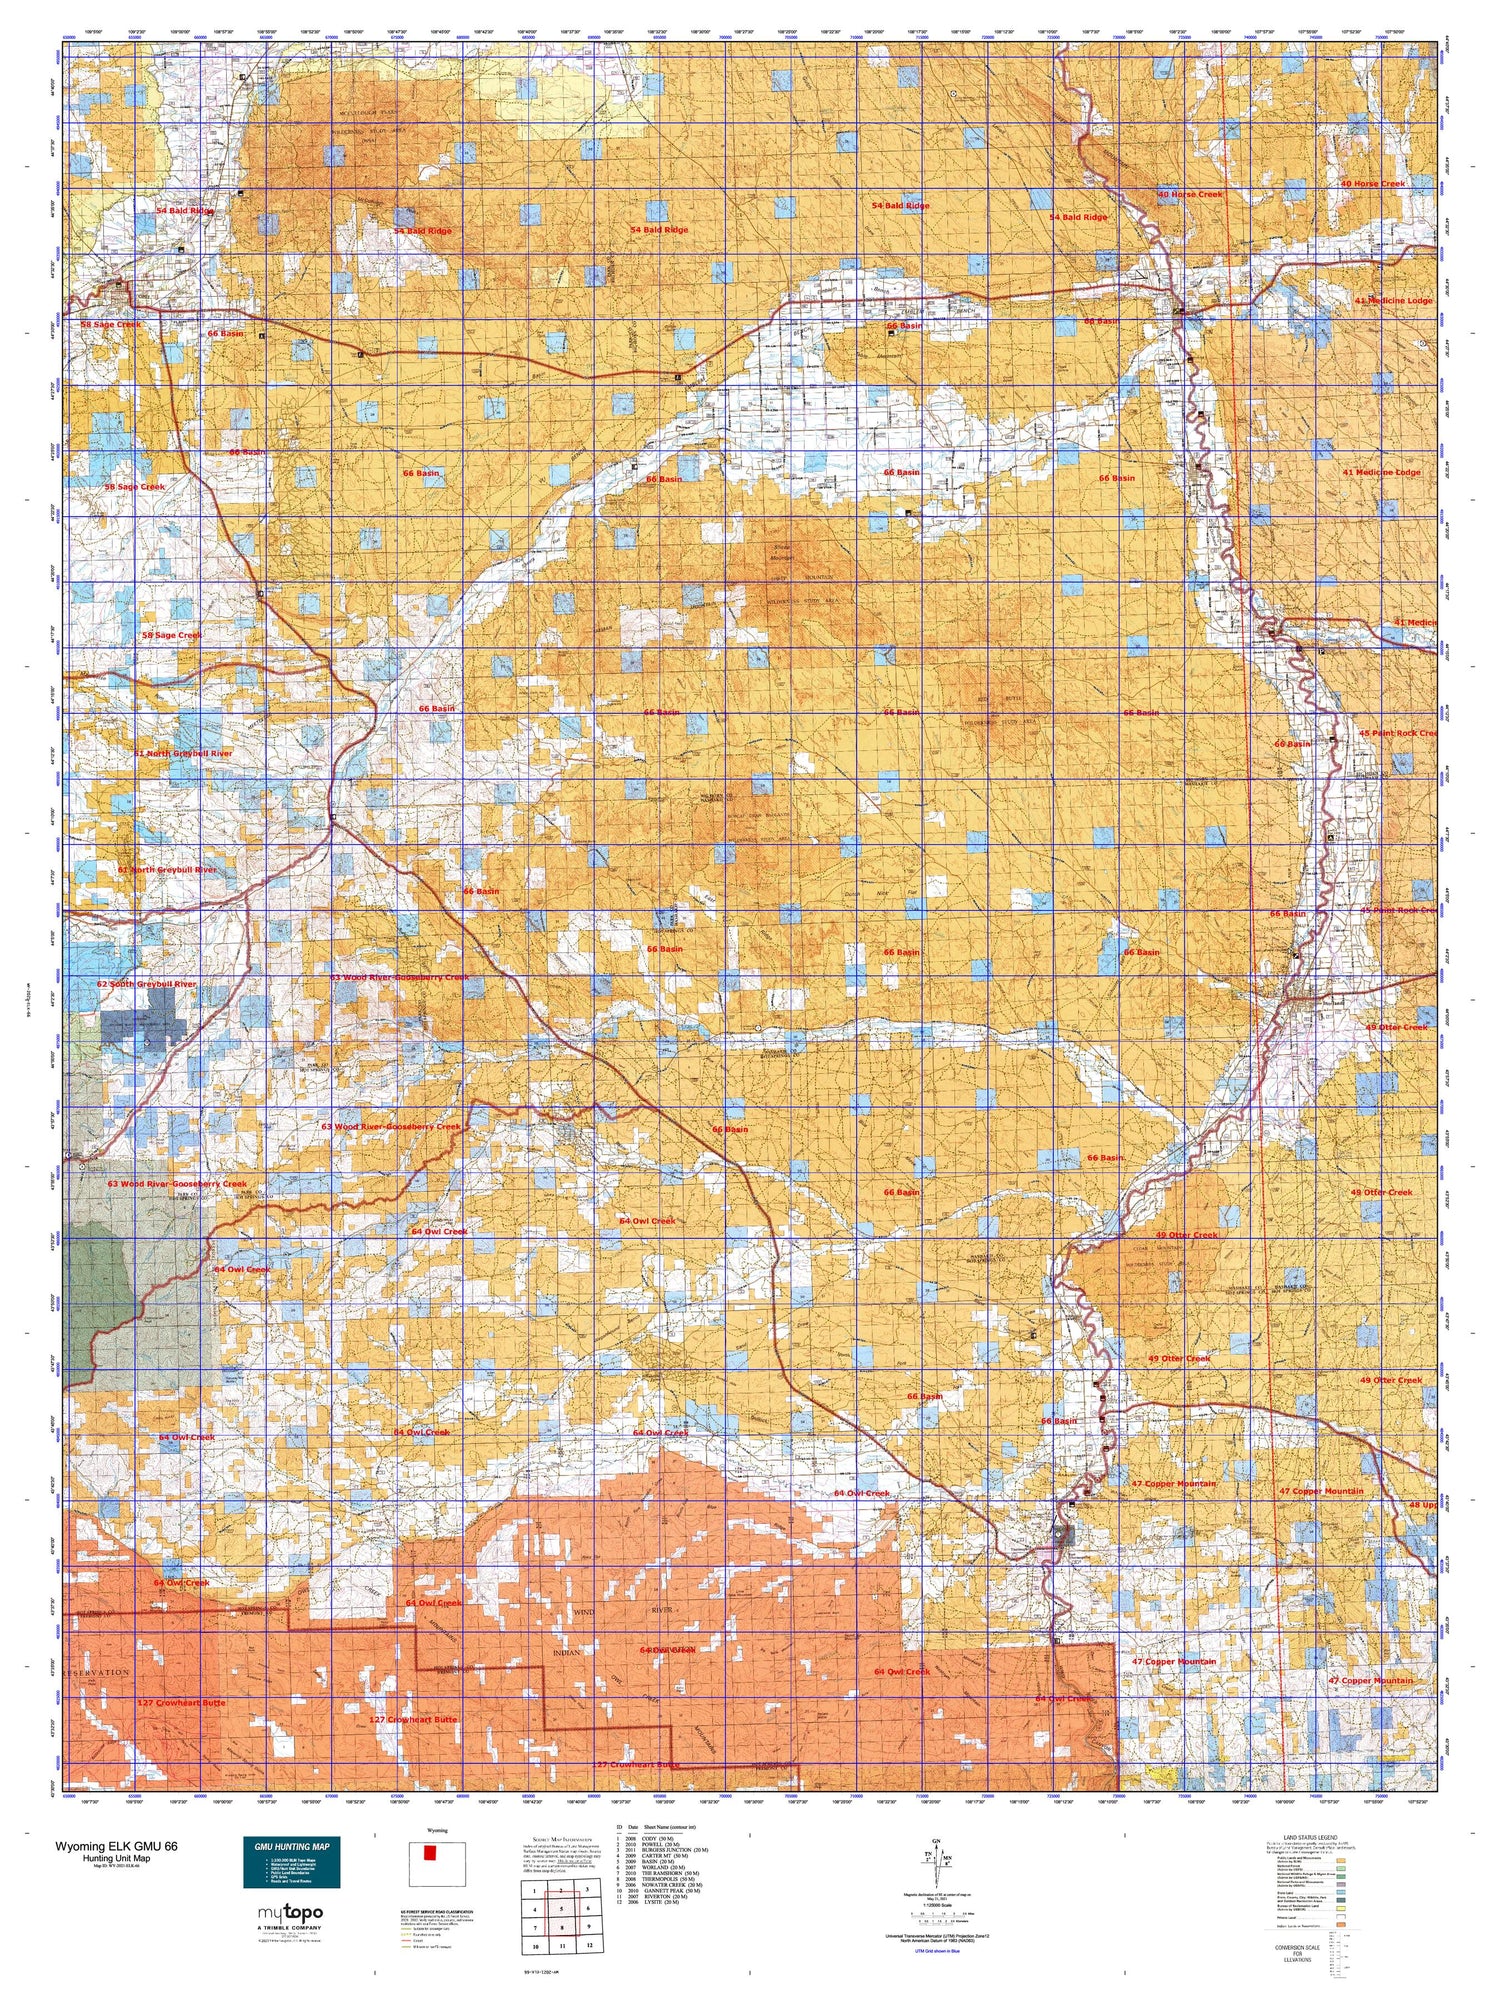 Wyoming Elk GMU 66 Map Image